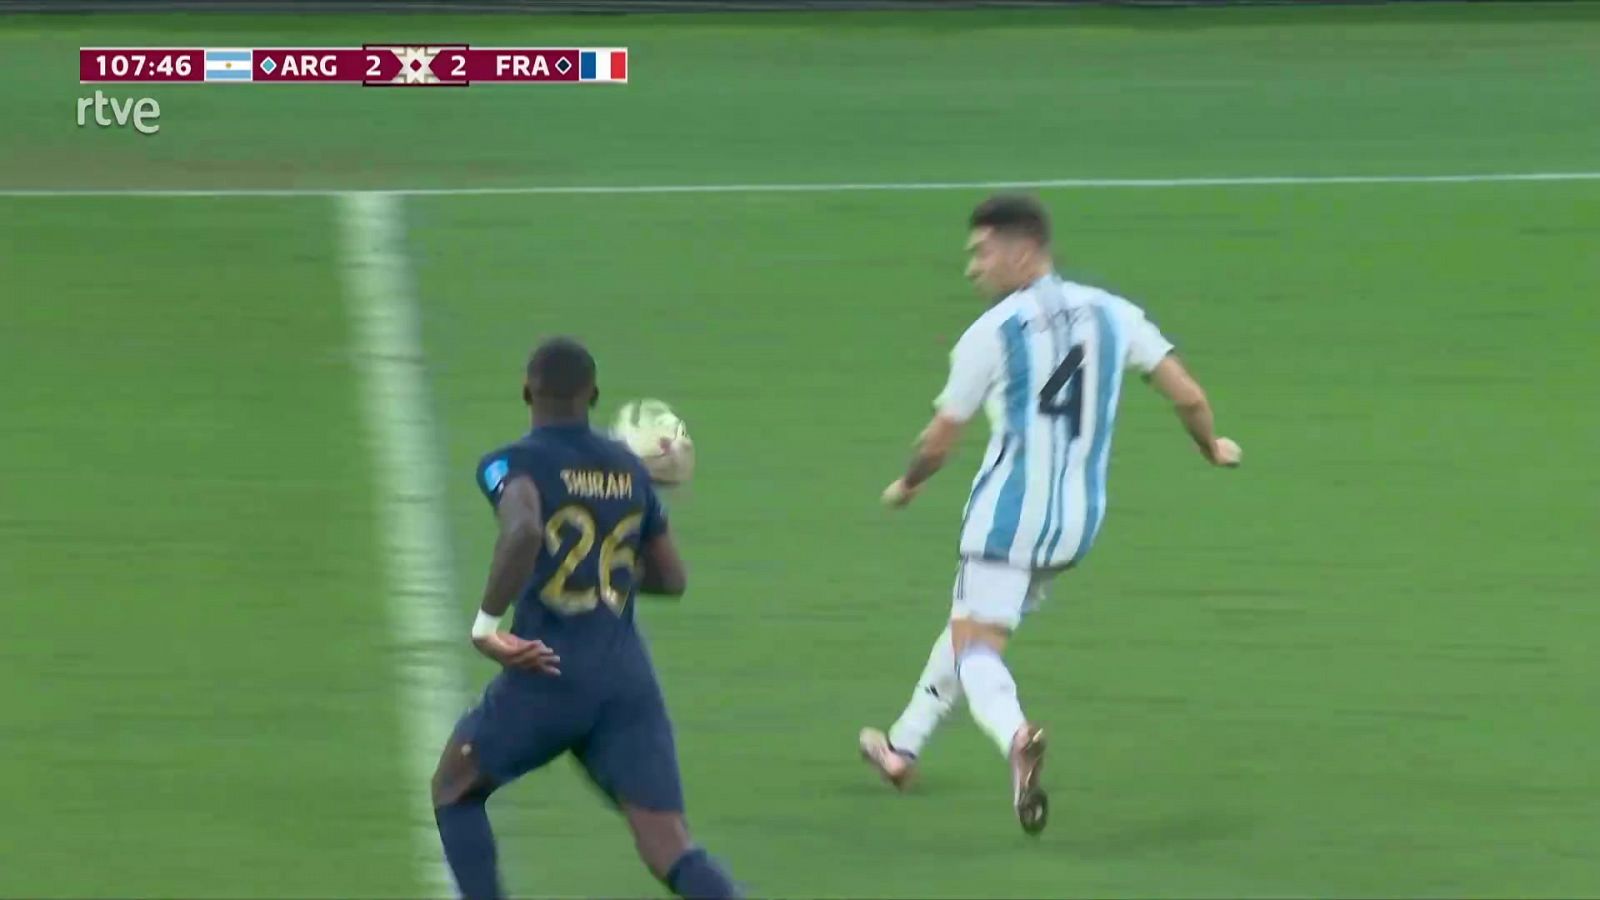 Gol de Argentina (3-2) de Messi tras una buena jugada de Lautaro